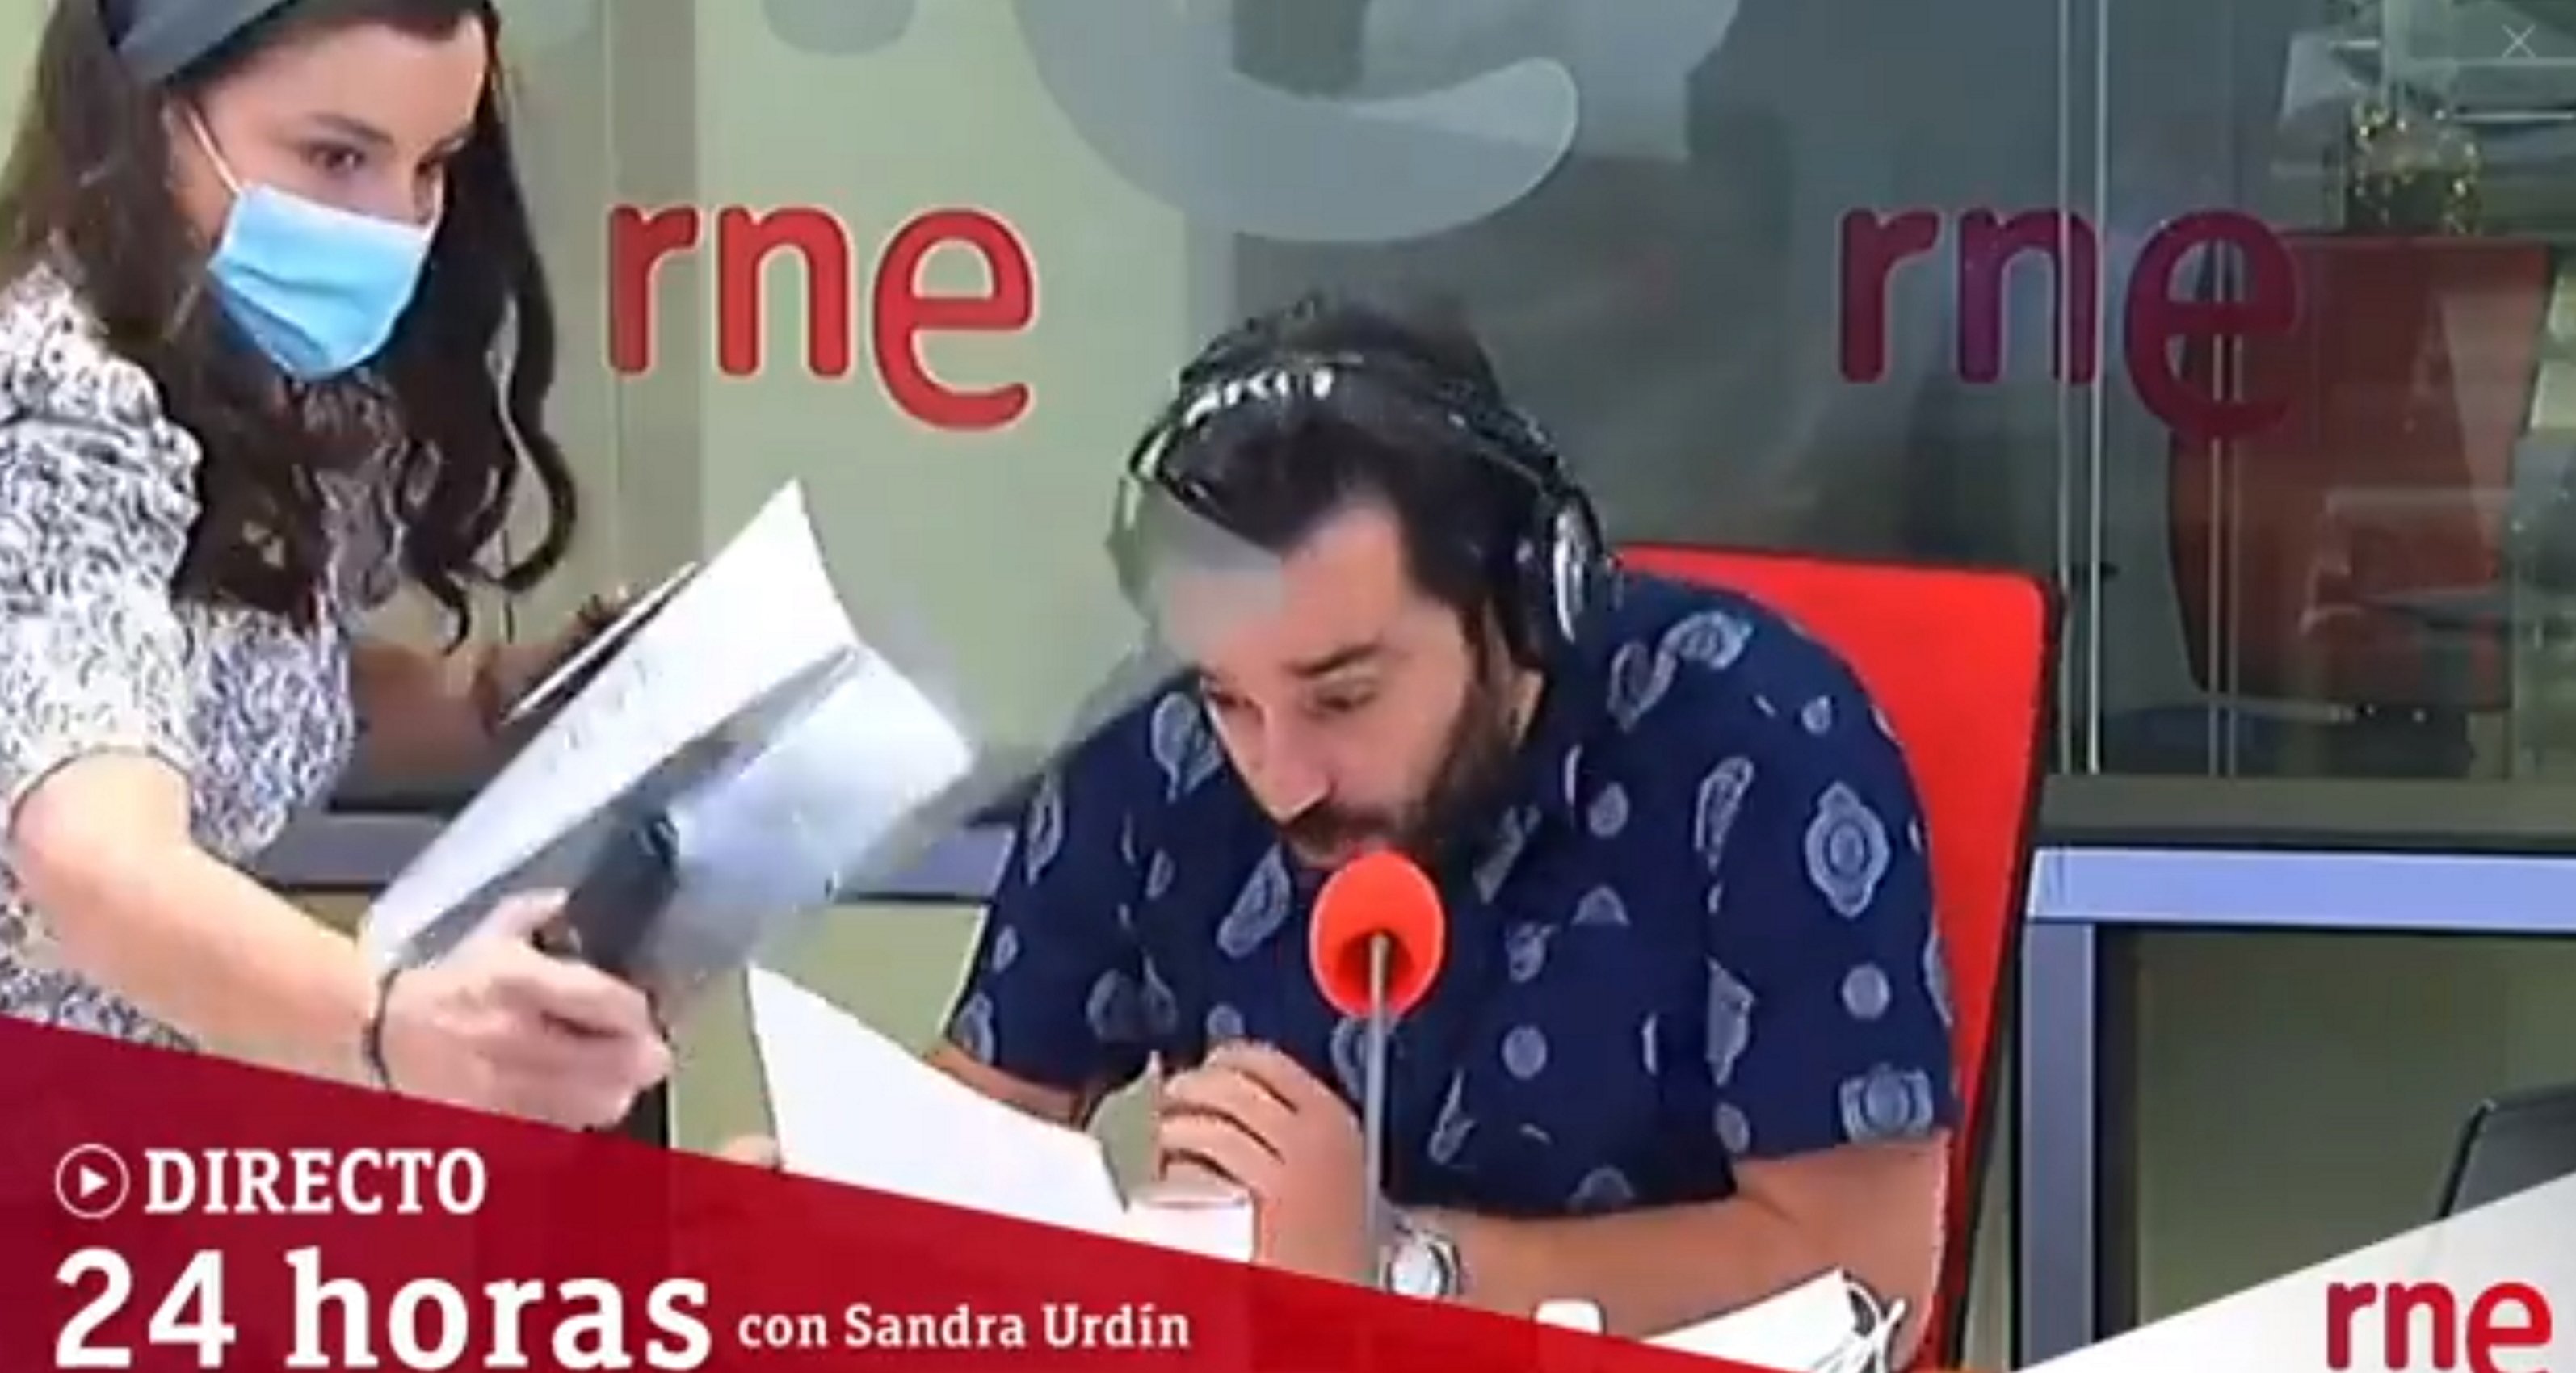 Accidente en directo en Radio Nacional de España: un presentador se salva de milagro